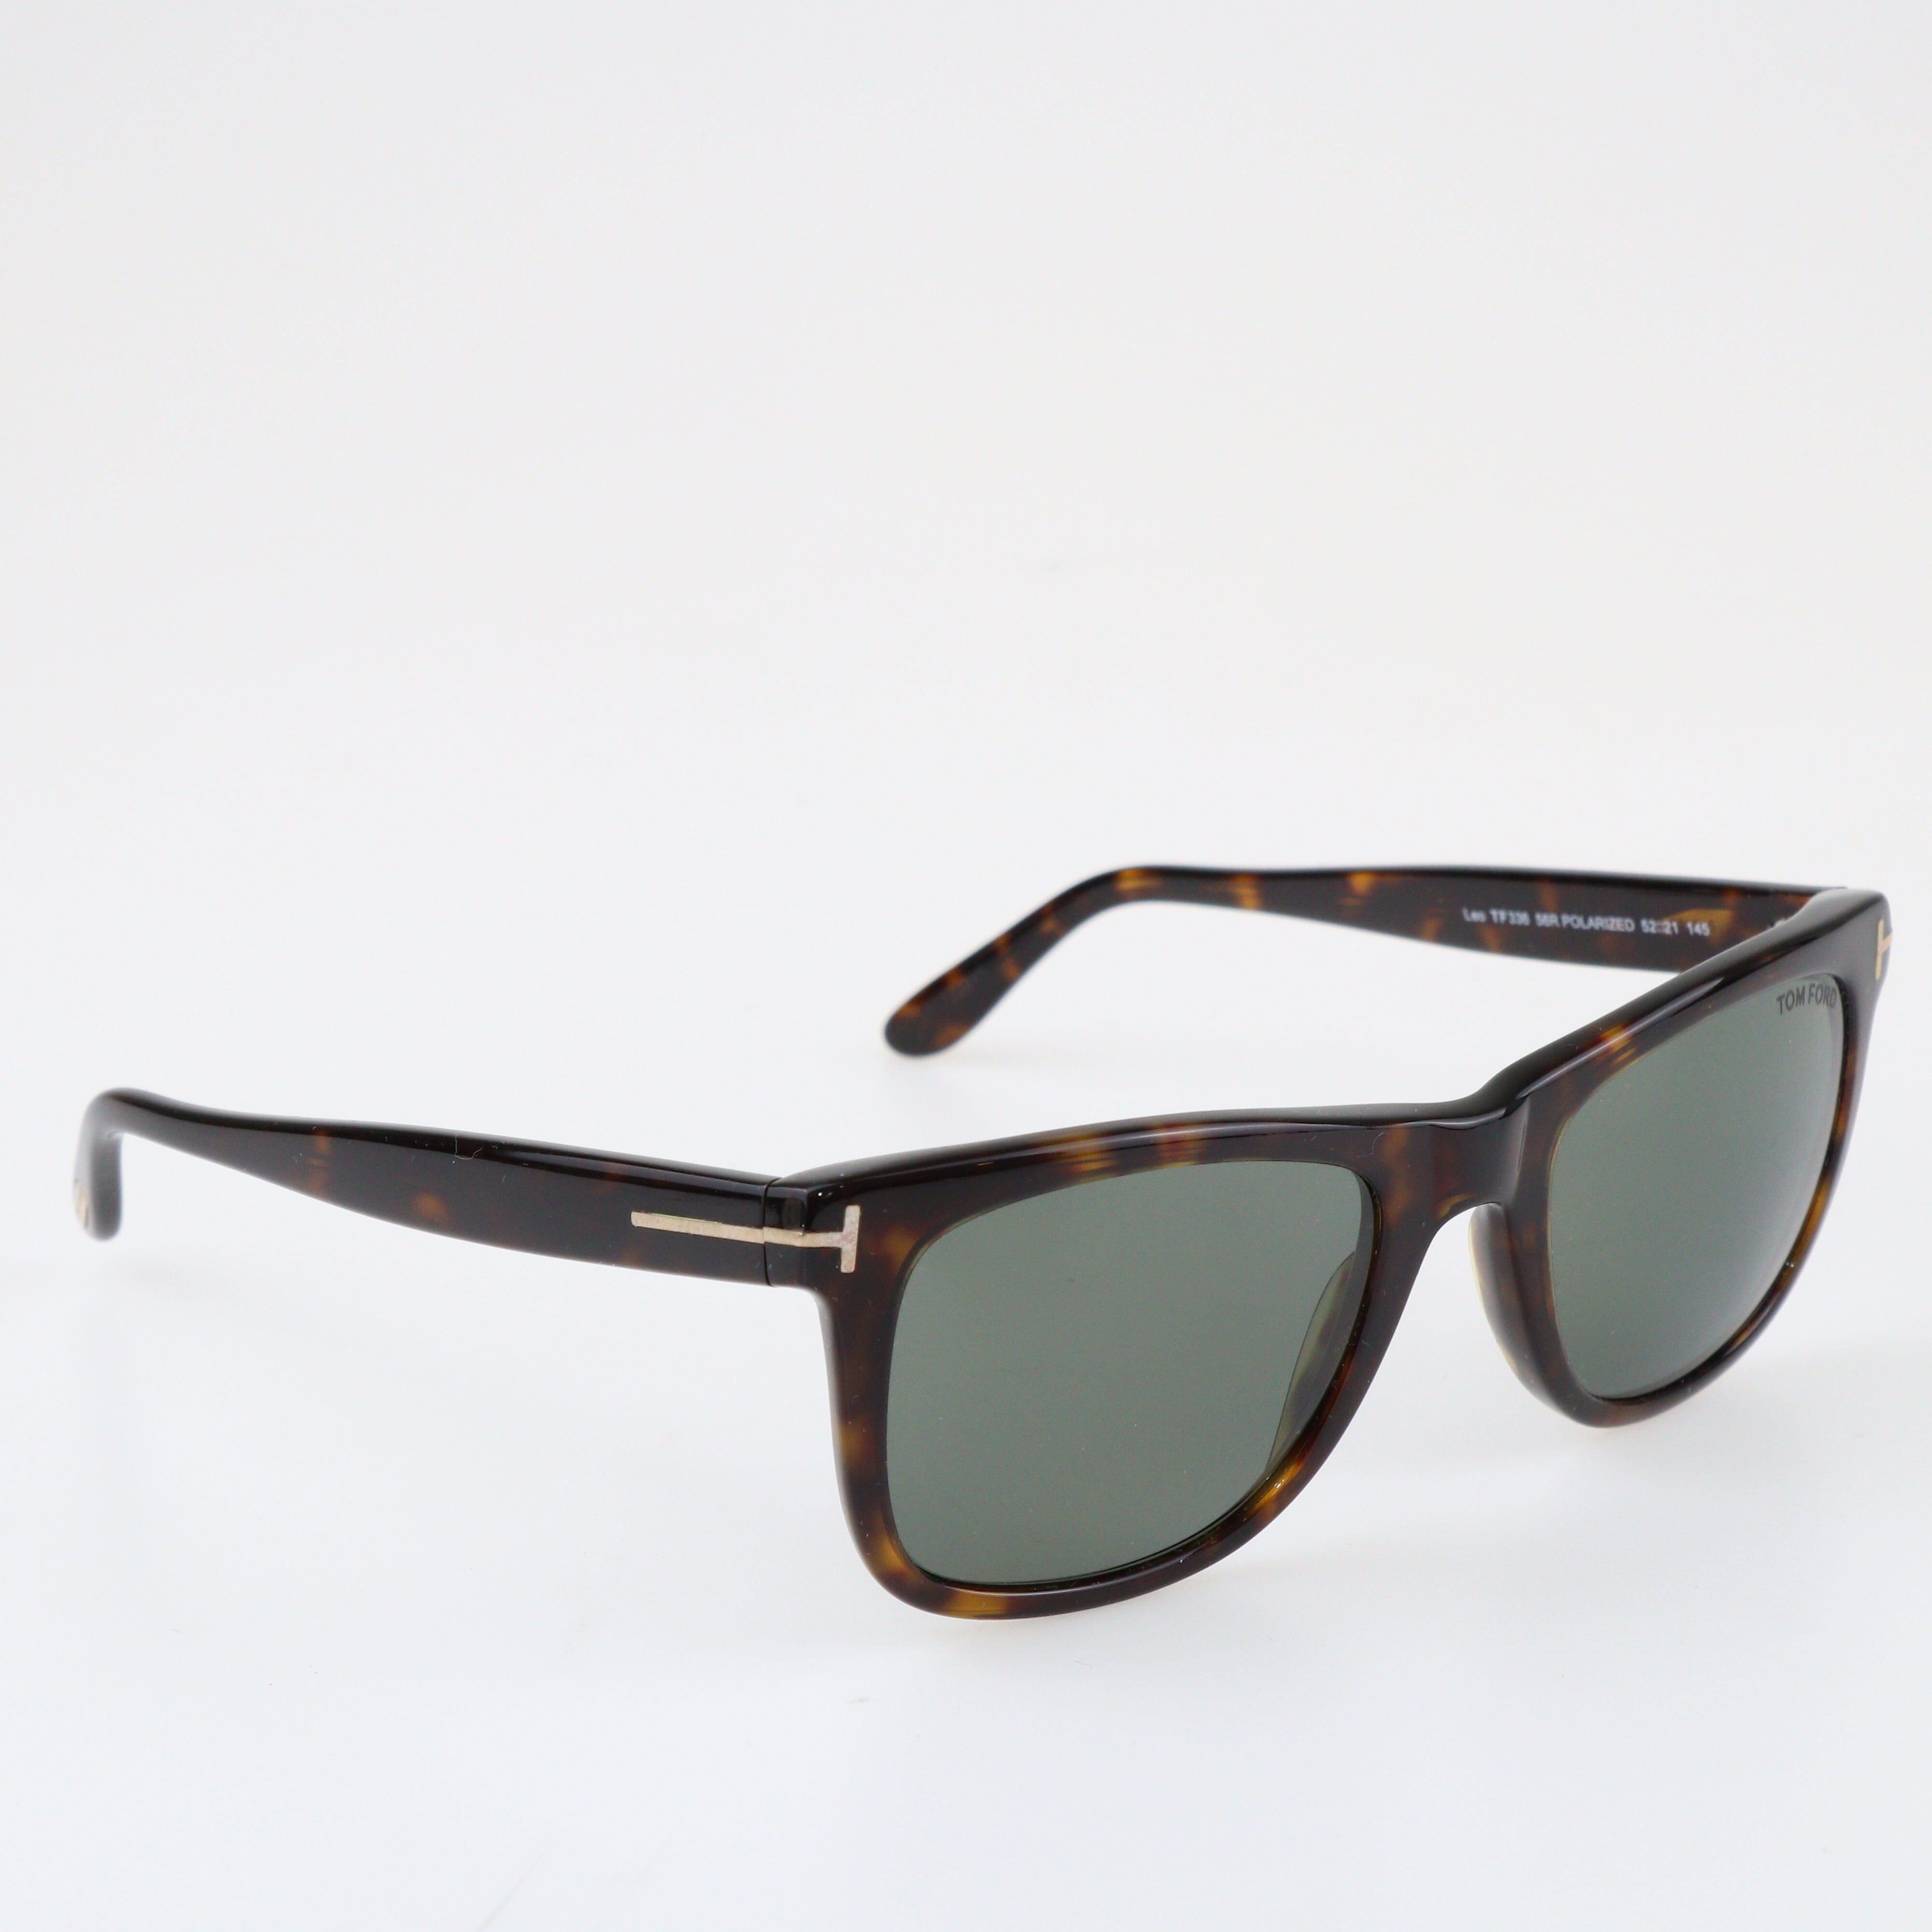 Black/Brown Leo TF336 Square Sunglasses Acce Tom Ford 